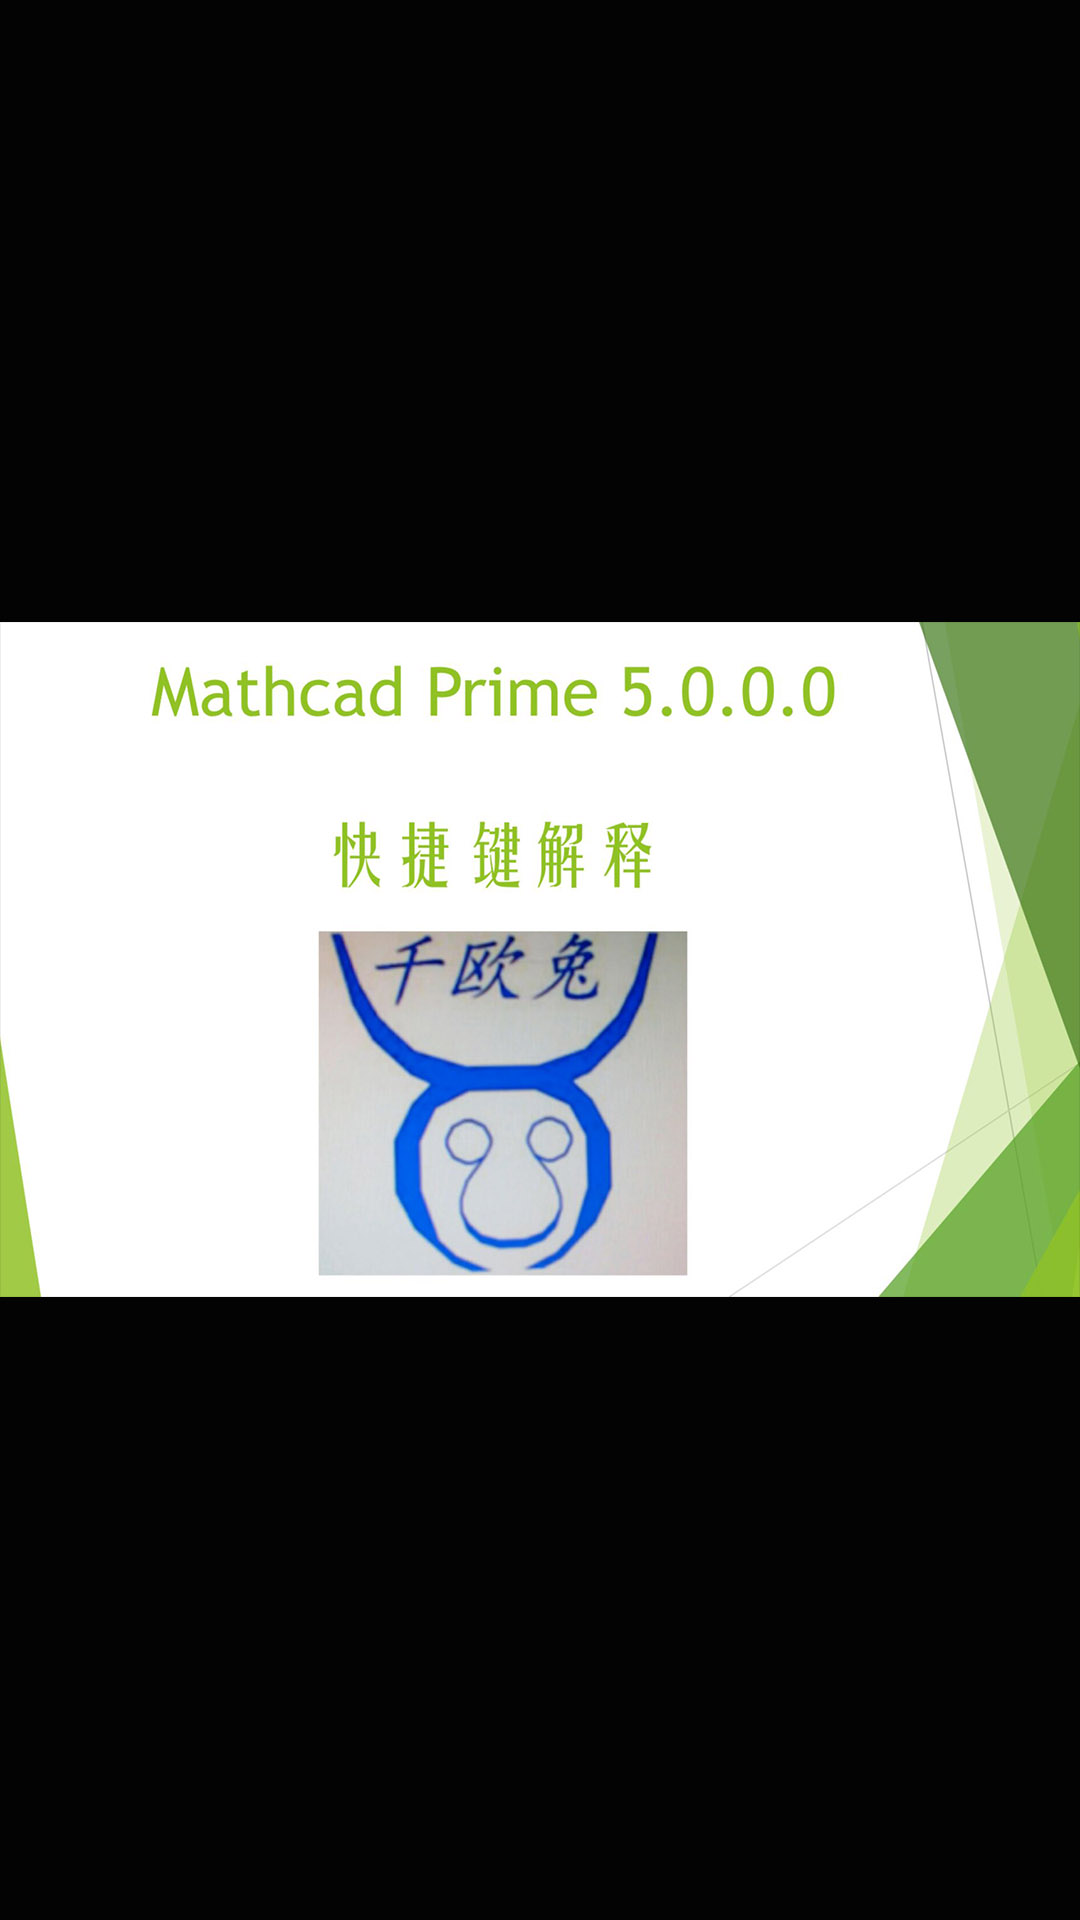 【千欧兔】Mathcad prime5.0常用快捷键解释 - 1#跟着UP主一起创作吧 